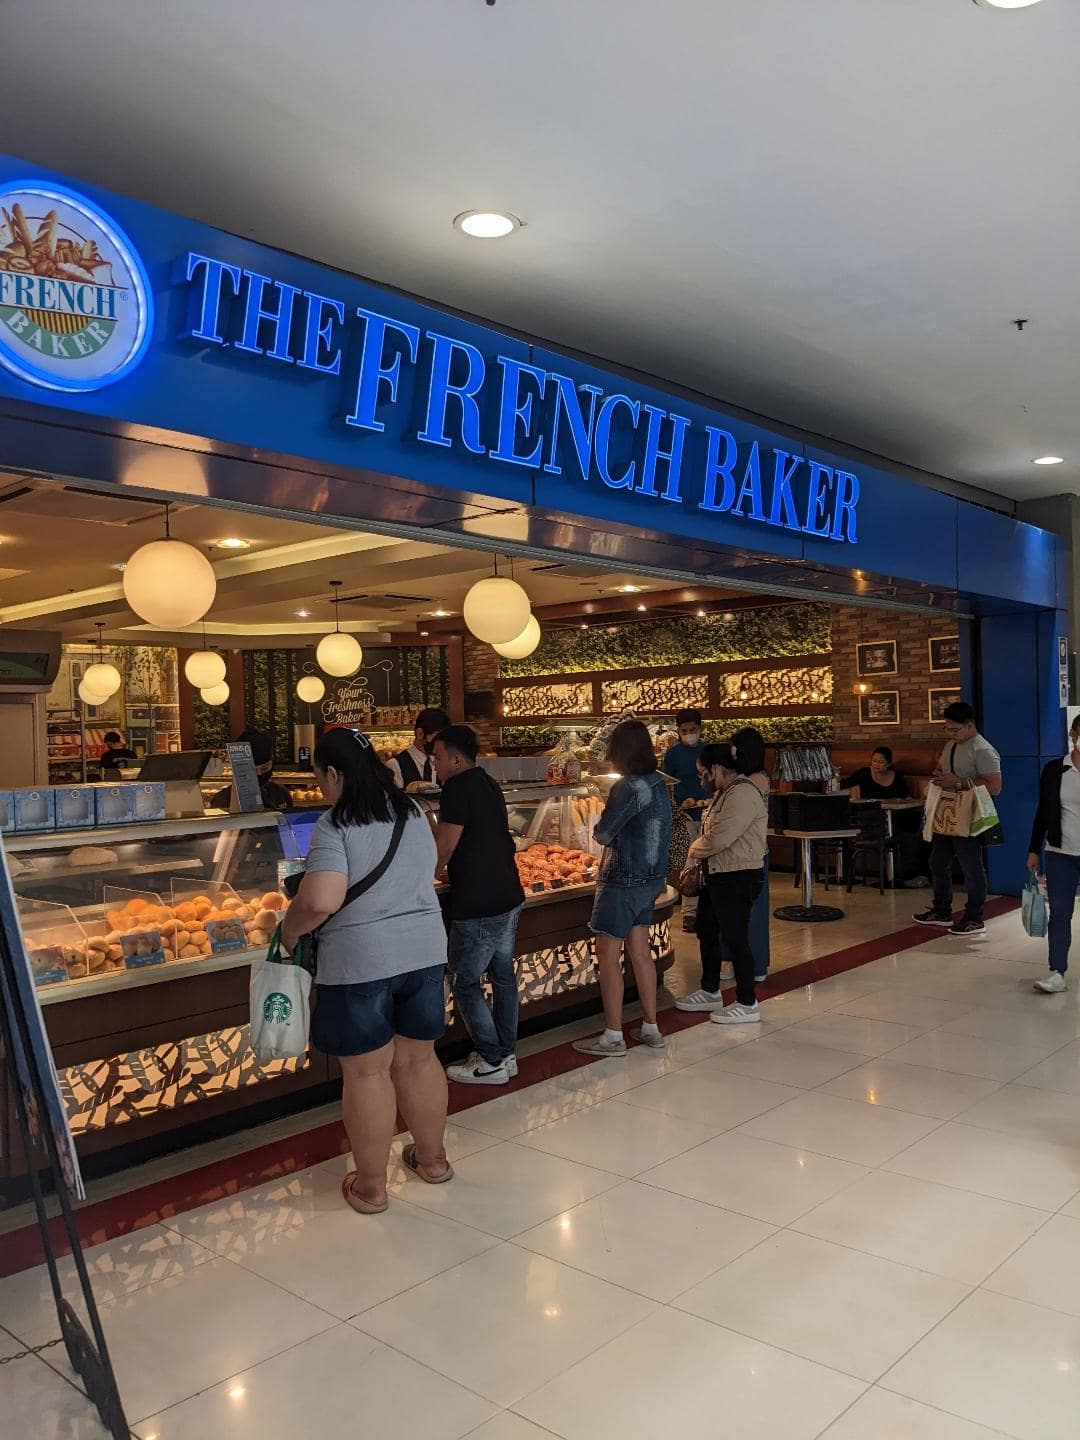 Obchod s čerstvým pečivom The French Baker.